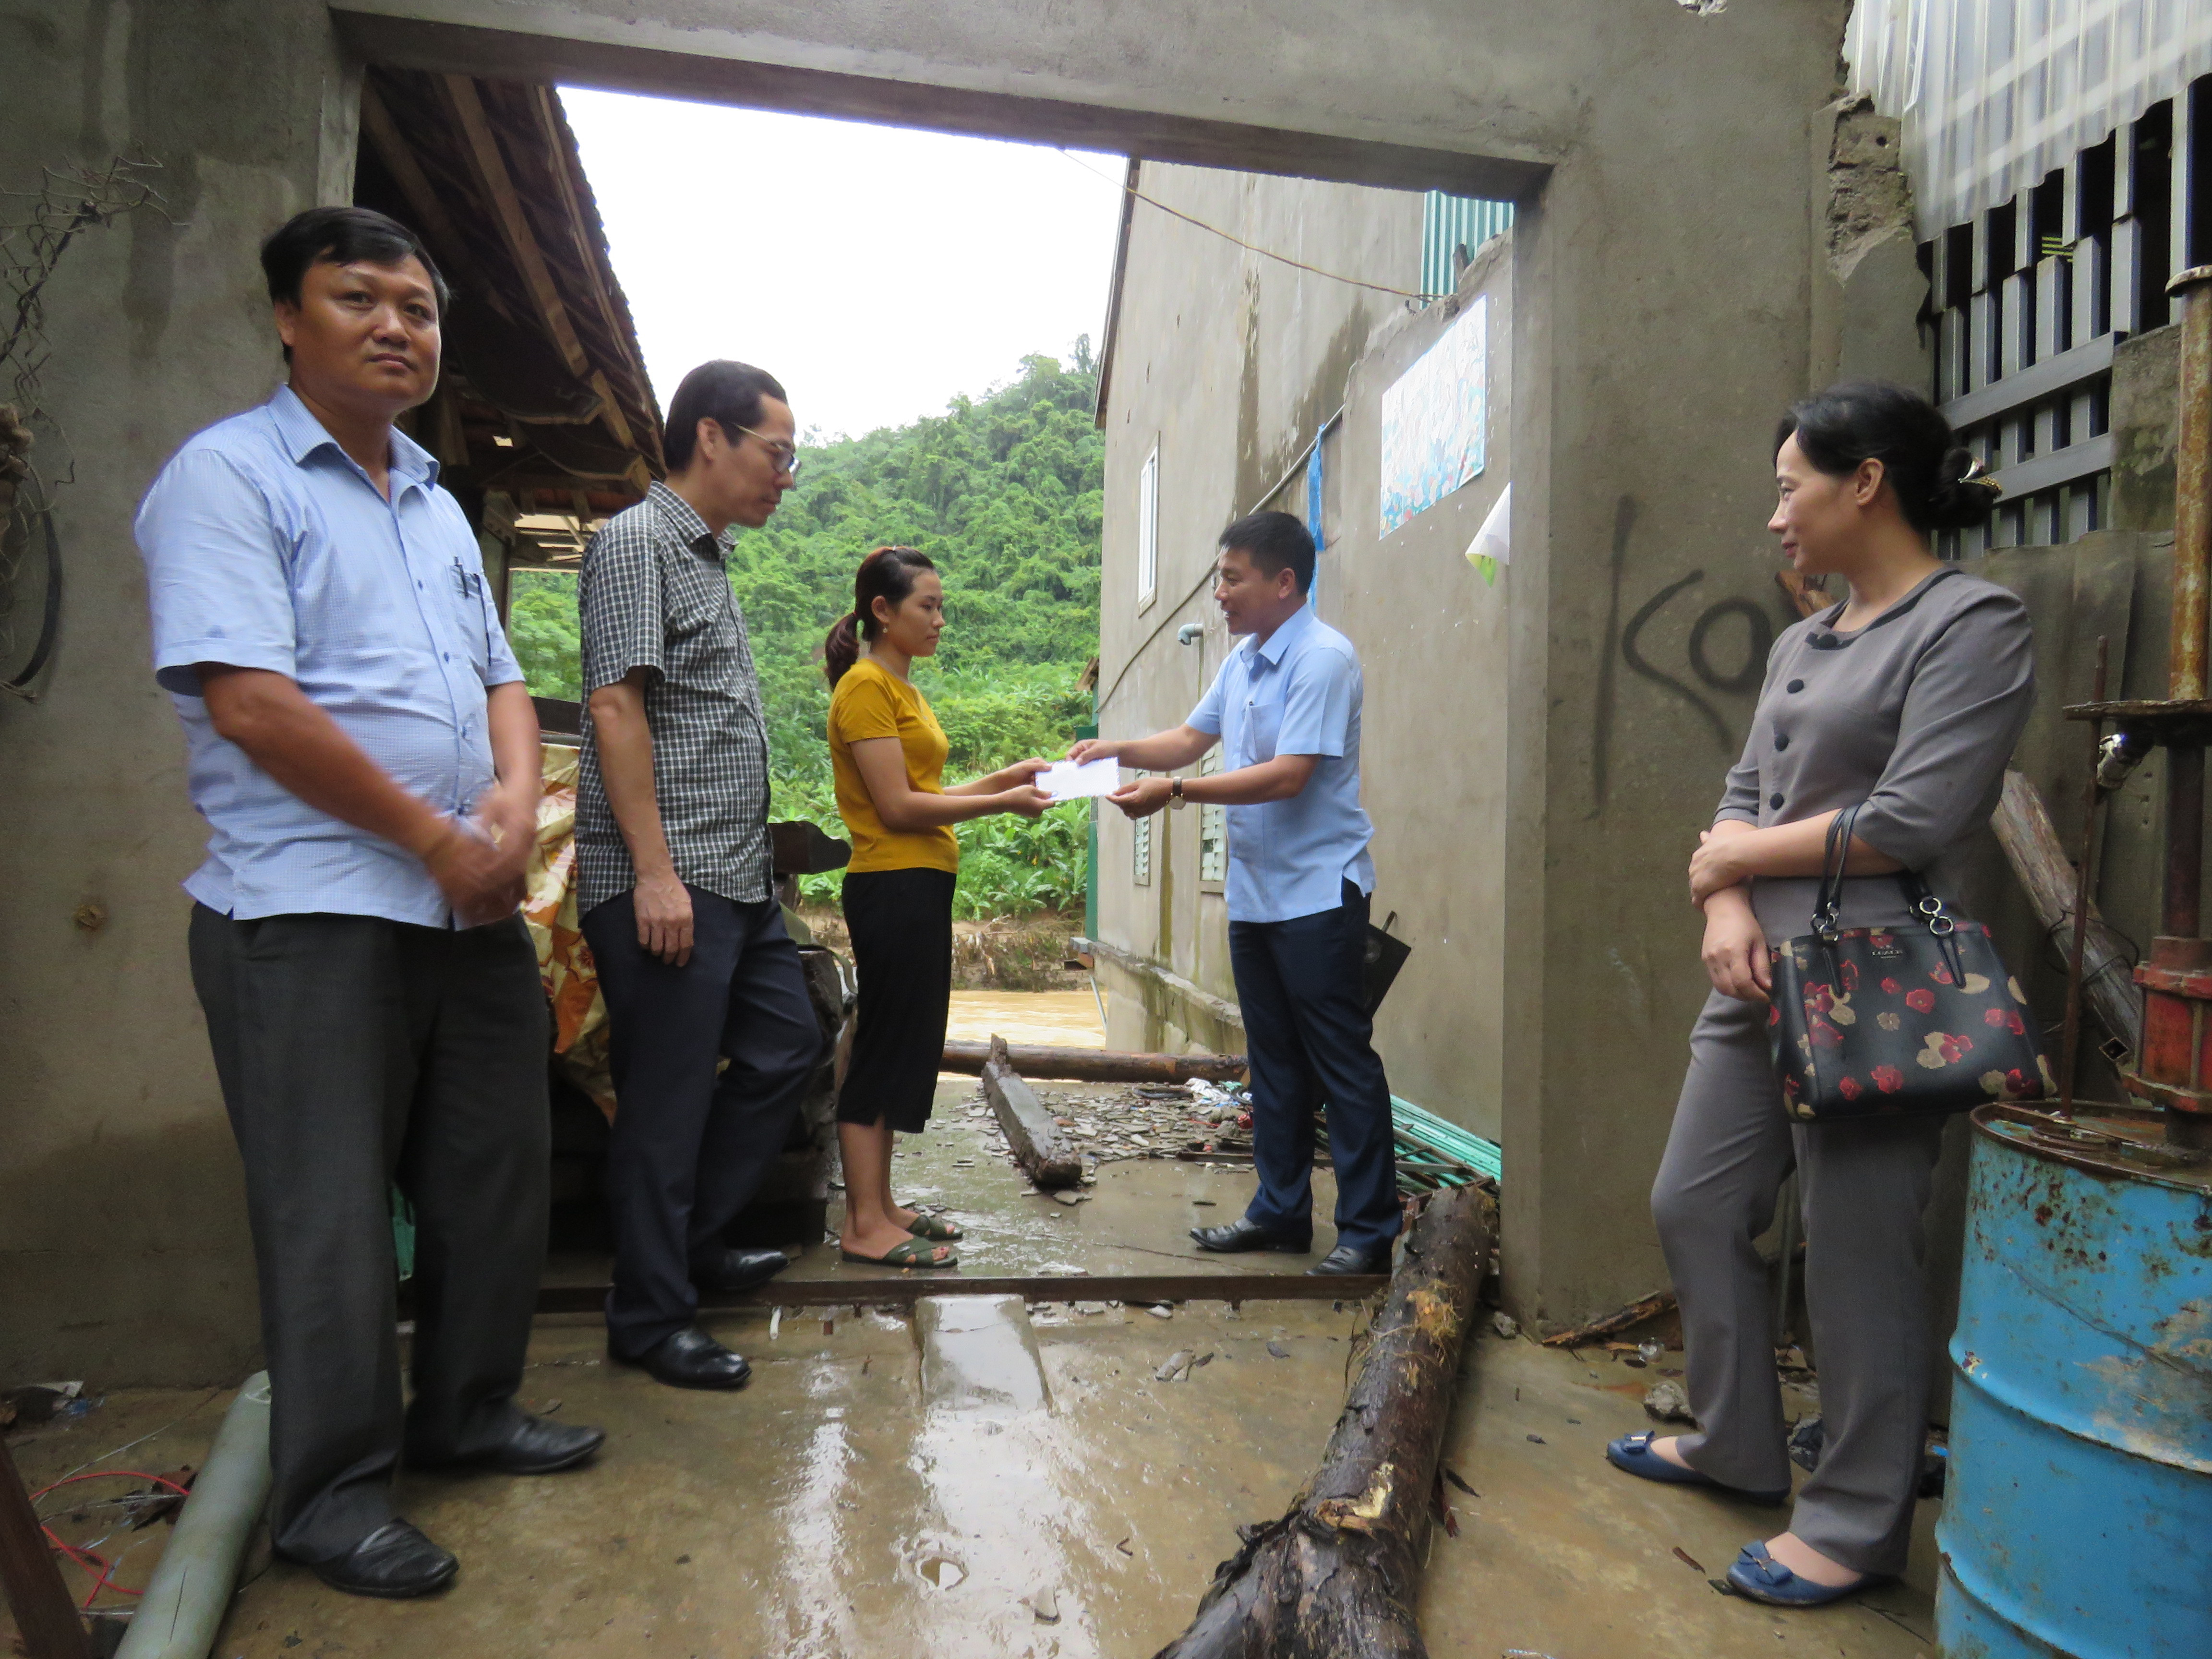 Đoàn thăm và tặng quà cho gia đình nghèo bị ảnh hưởng bởi bão số 4 trên địa bàn thị trấn Mường Xén. Ảnh: Duy Thành